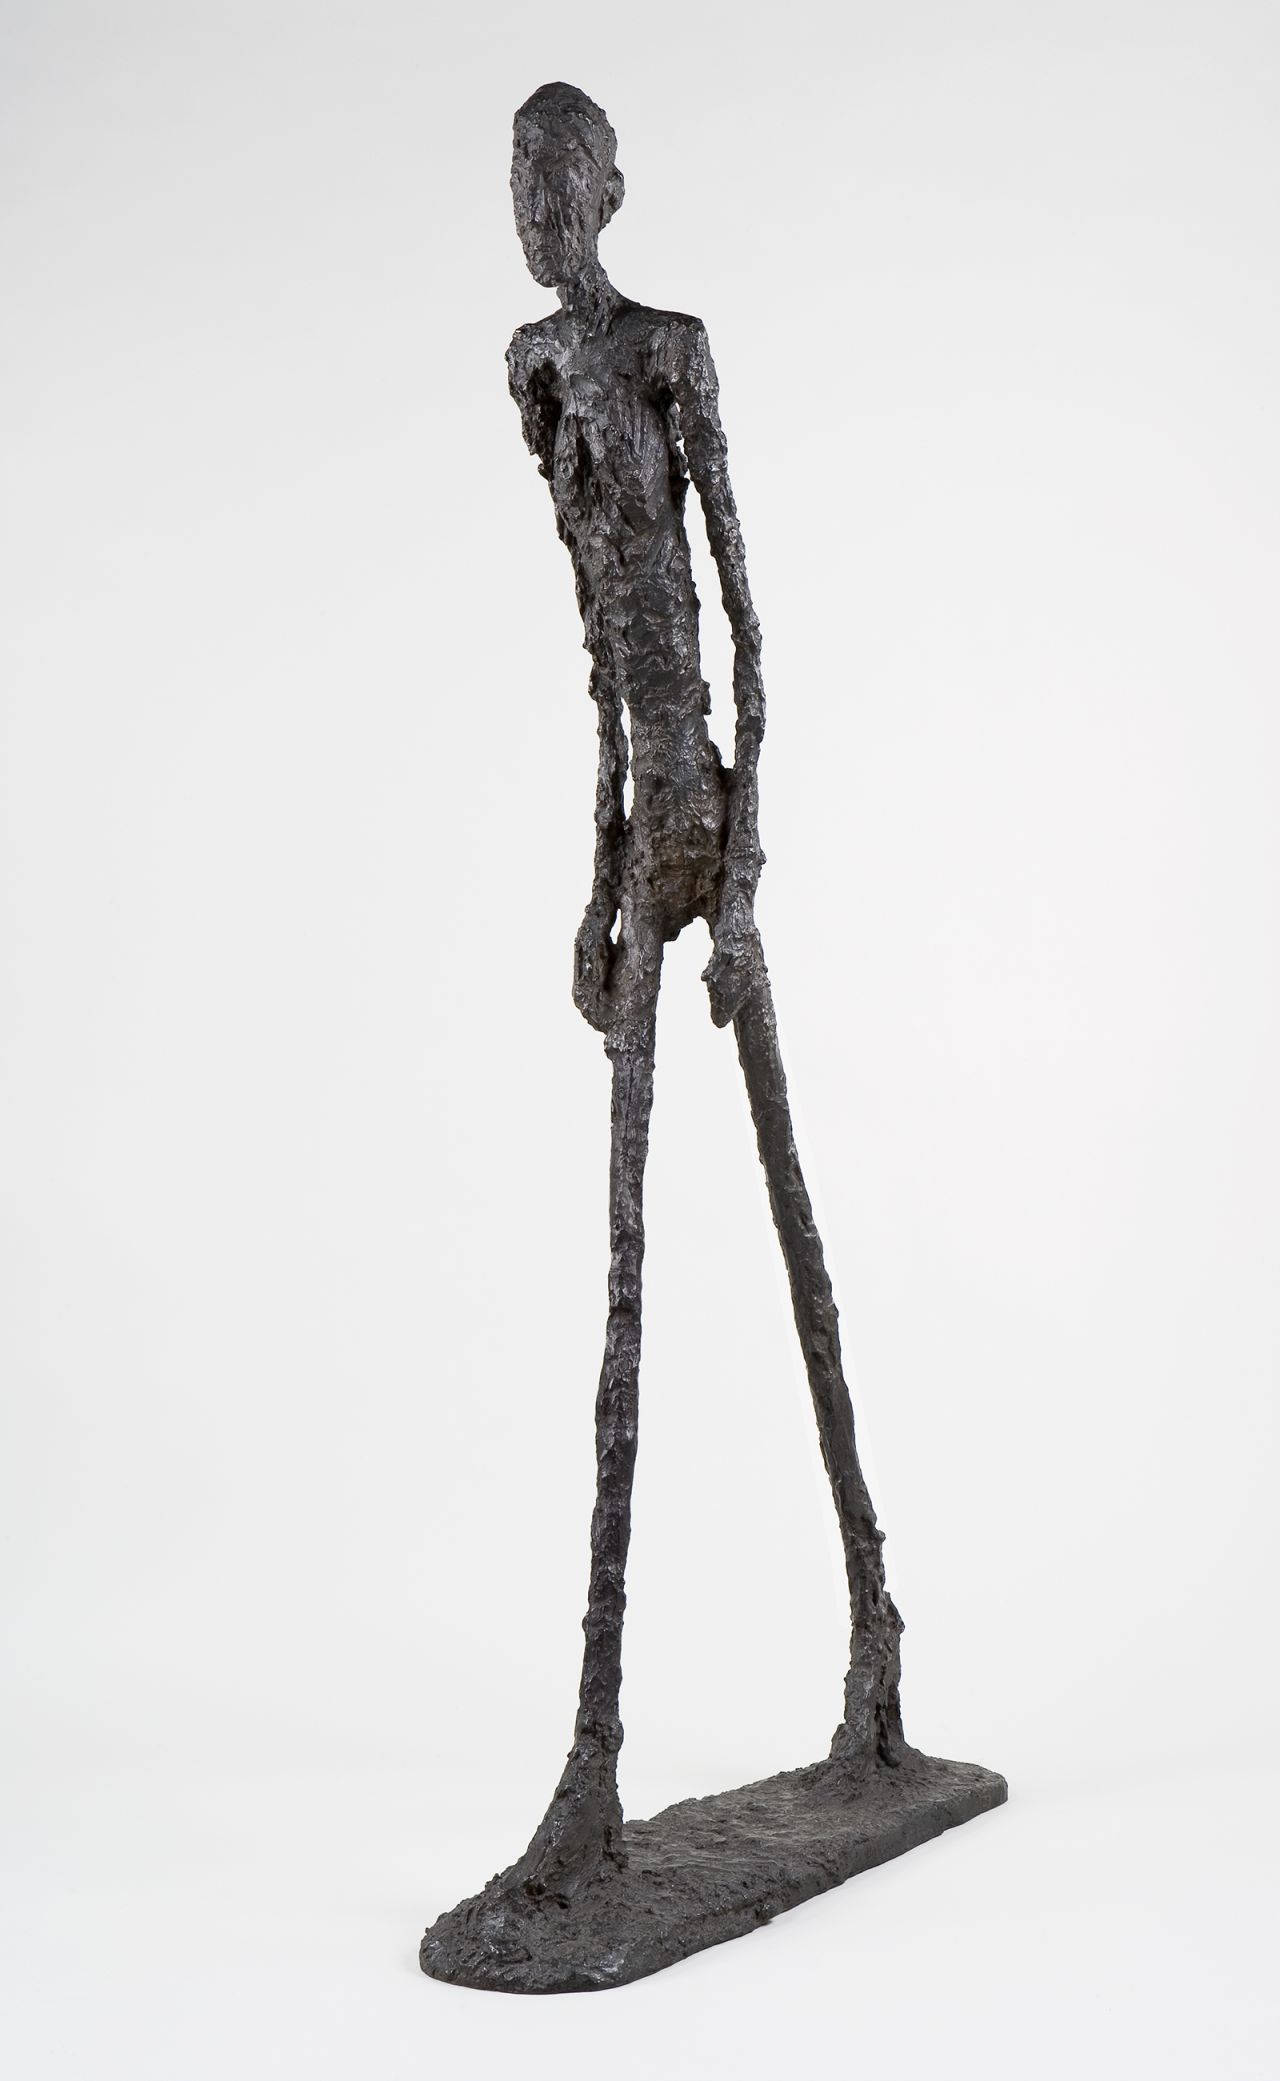 "L'Homme qui marche I" (1960) by Alberto Giacometti